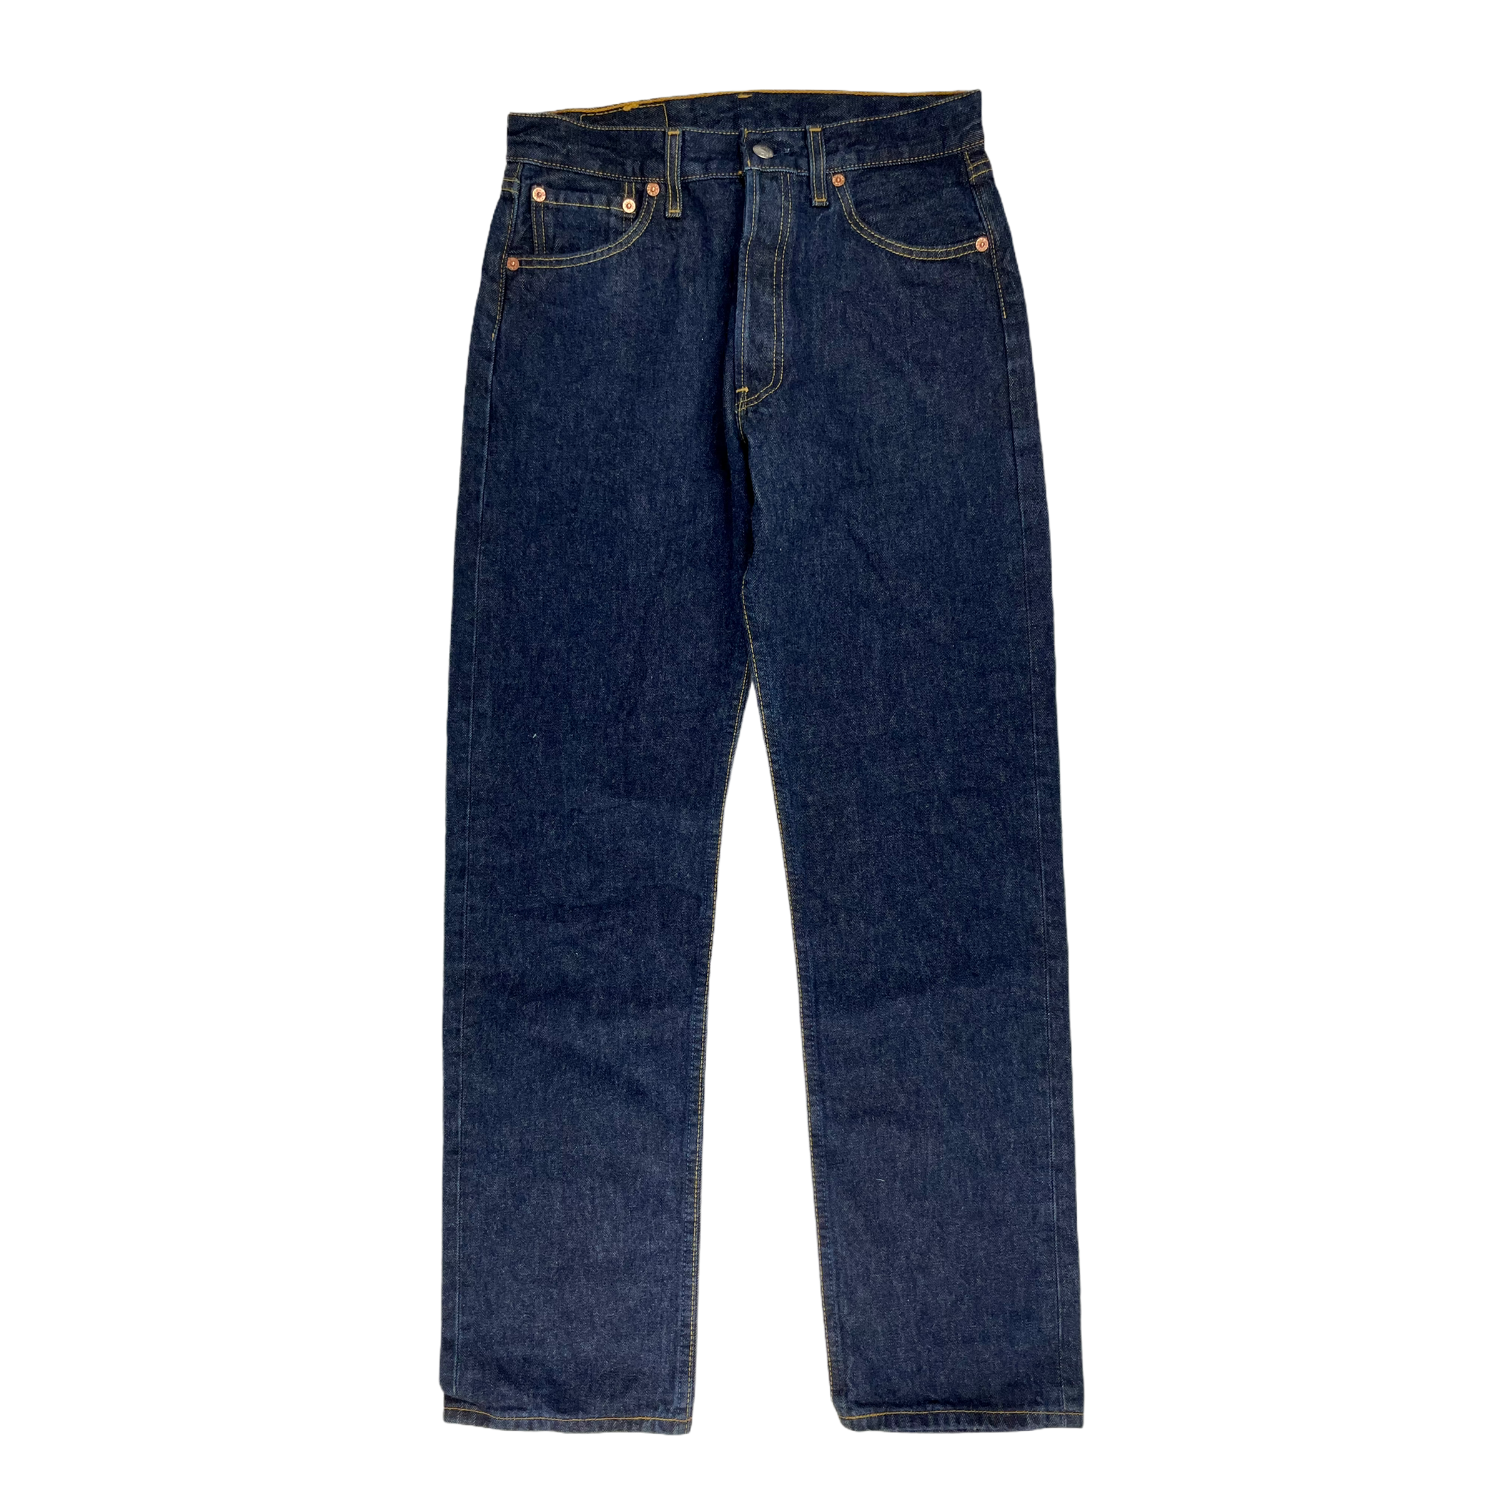 Vintage Levi's jeans 501 - Restorecph